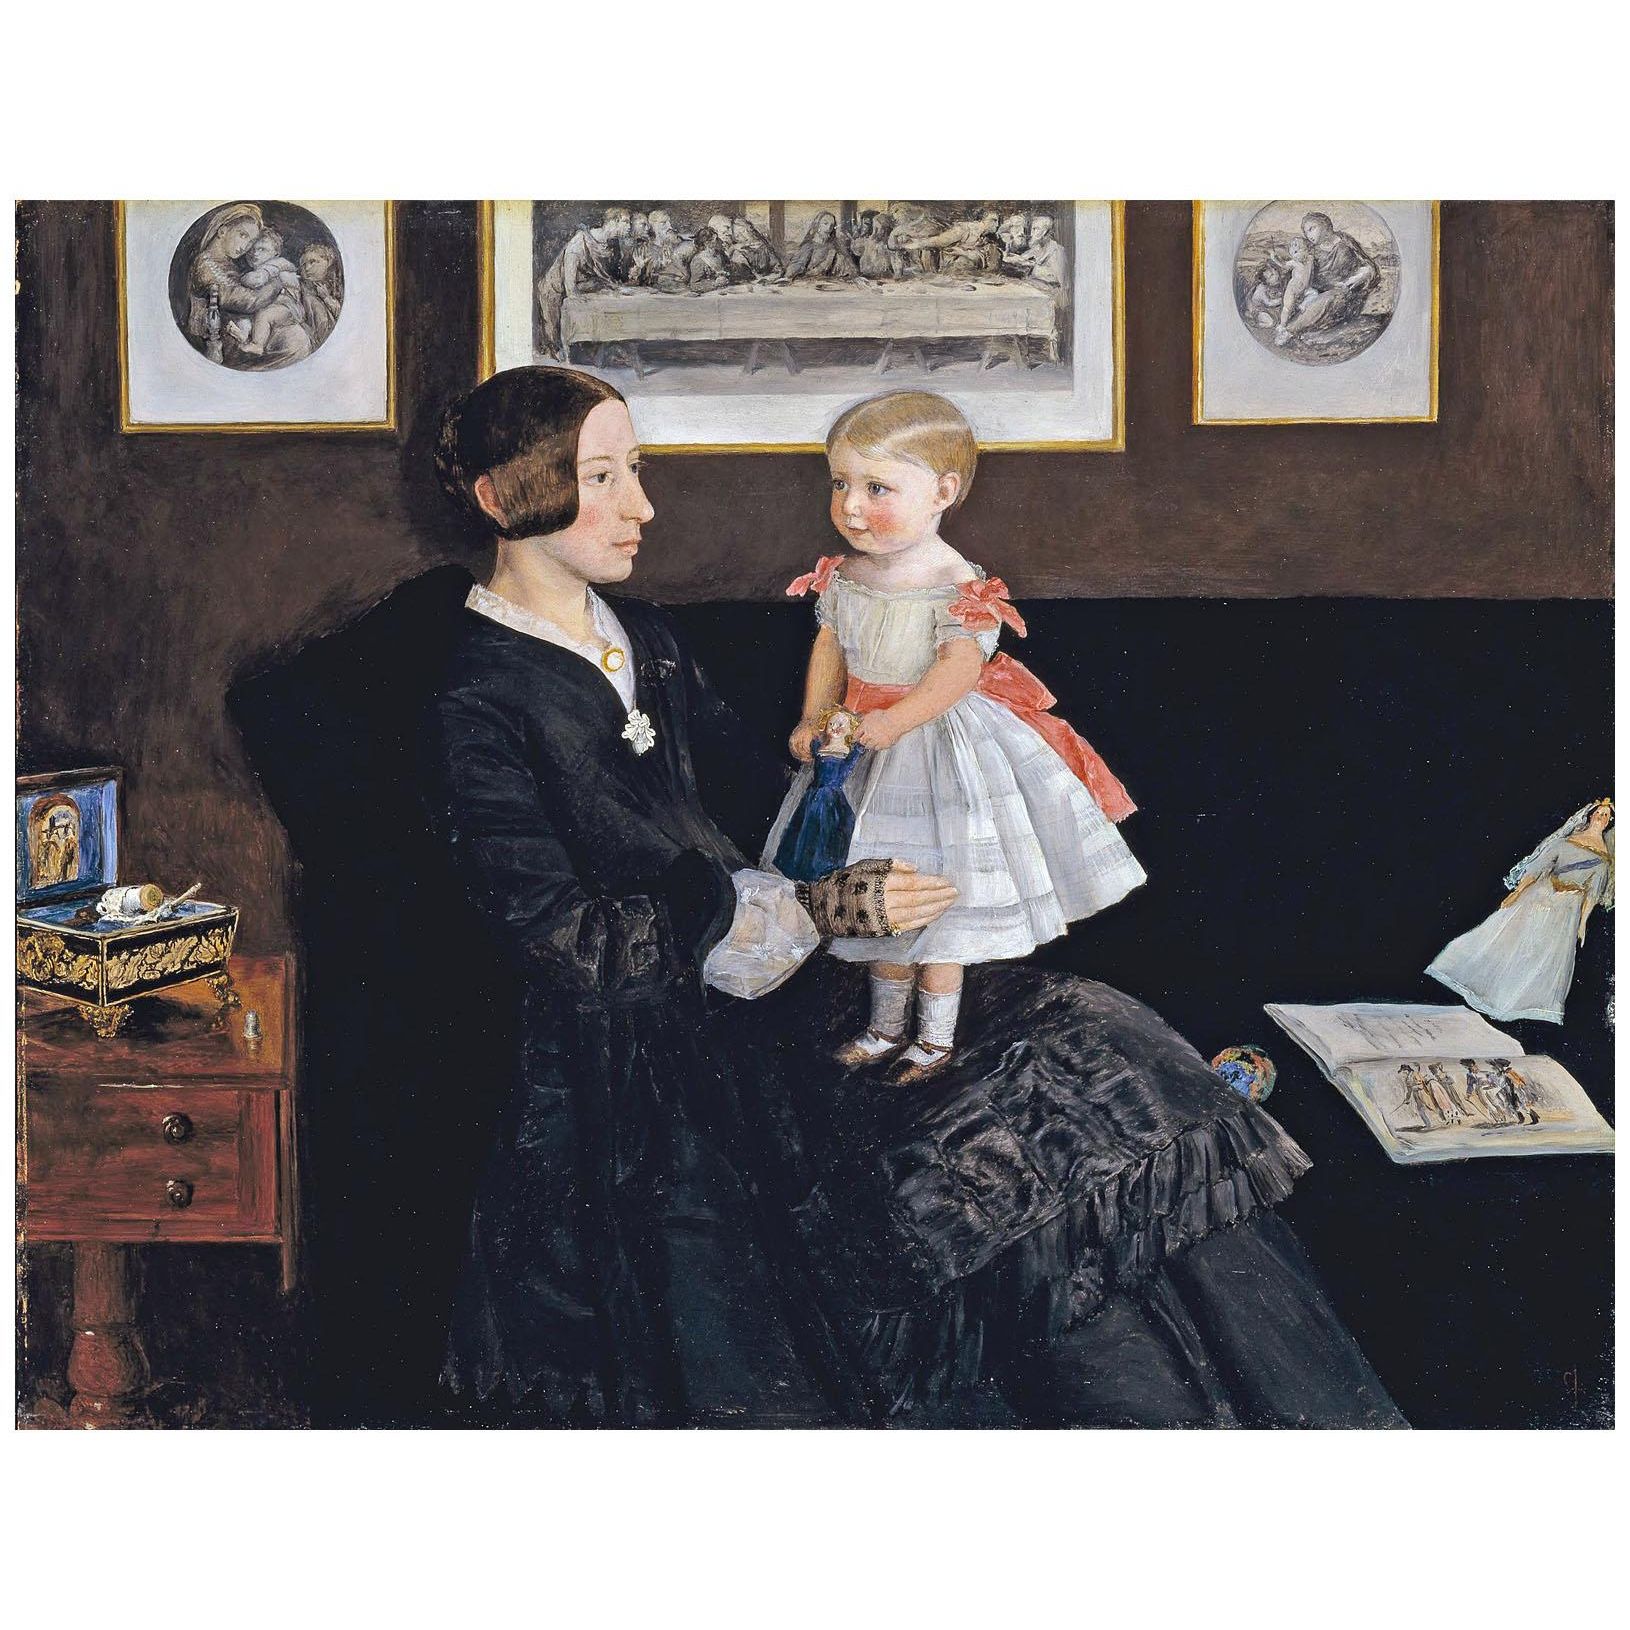 John Everett Millais. Mrs Wyatt with Daughter. 1850. Tate Britain